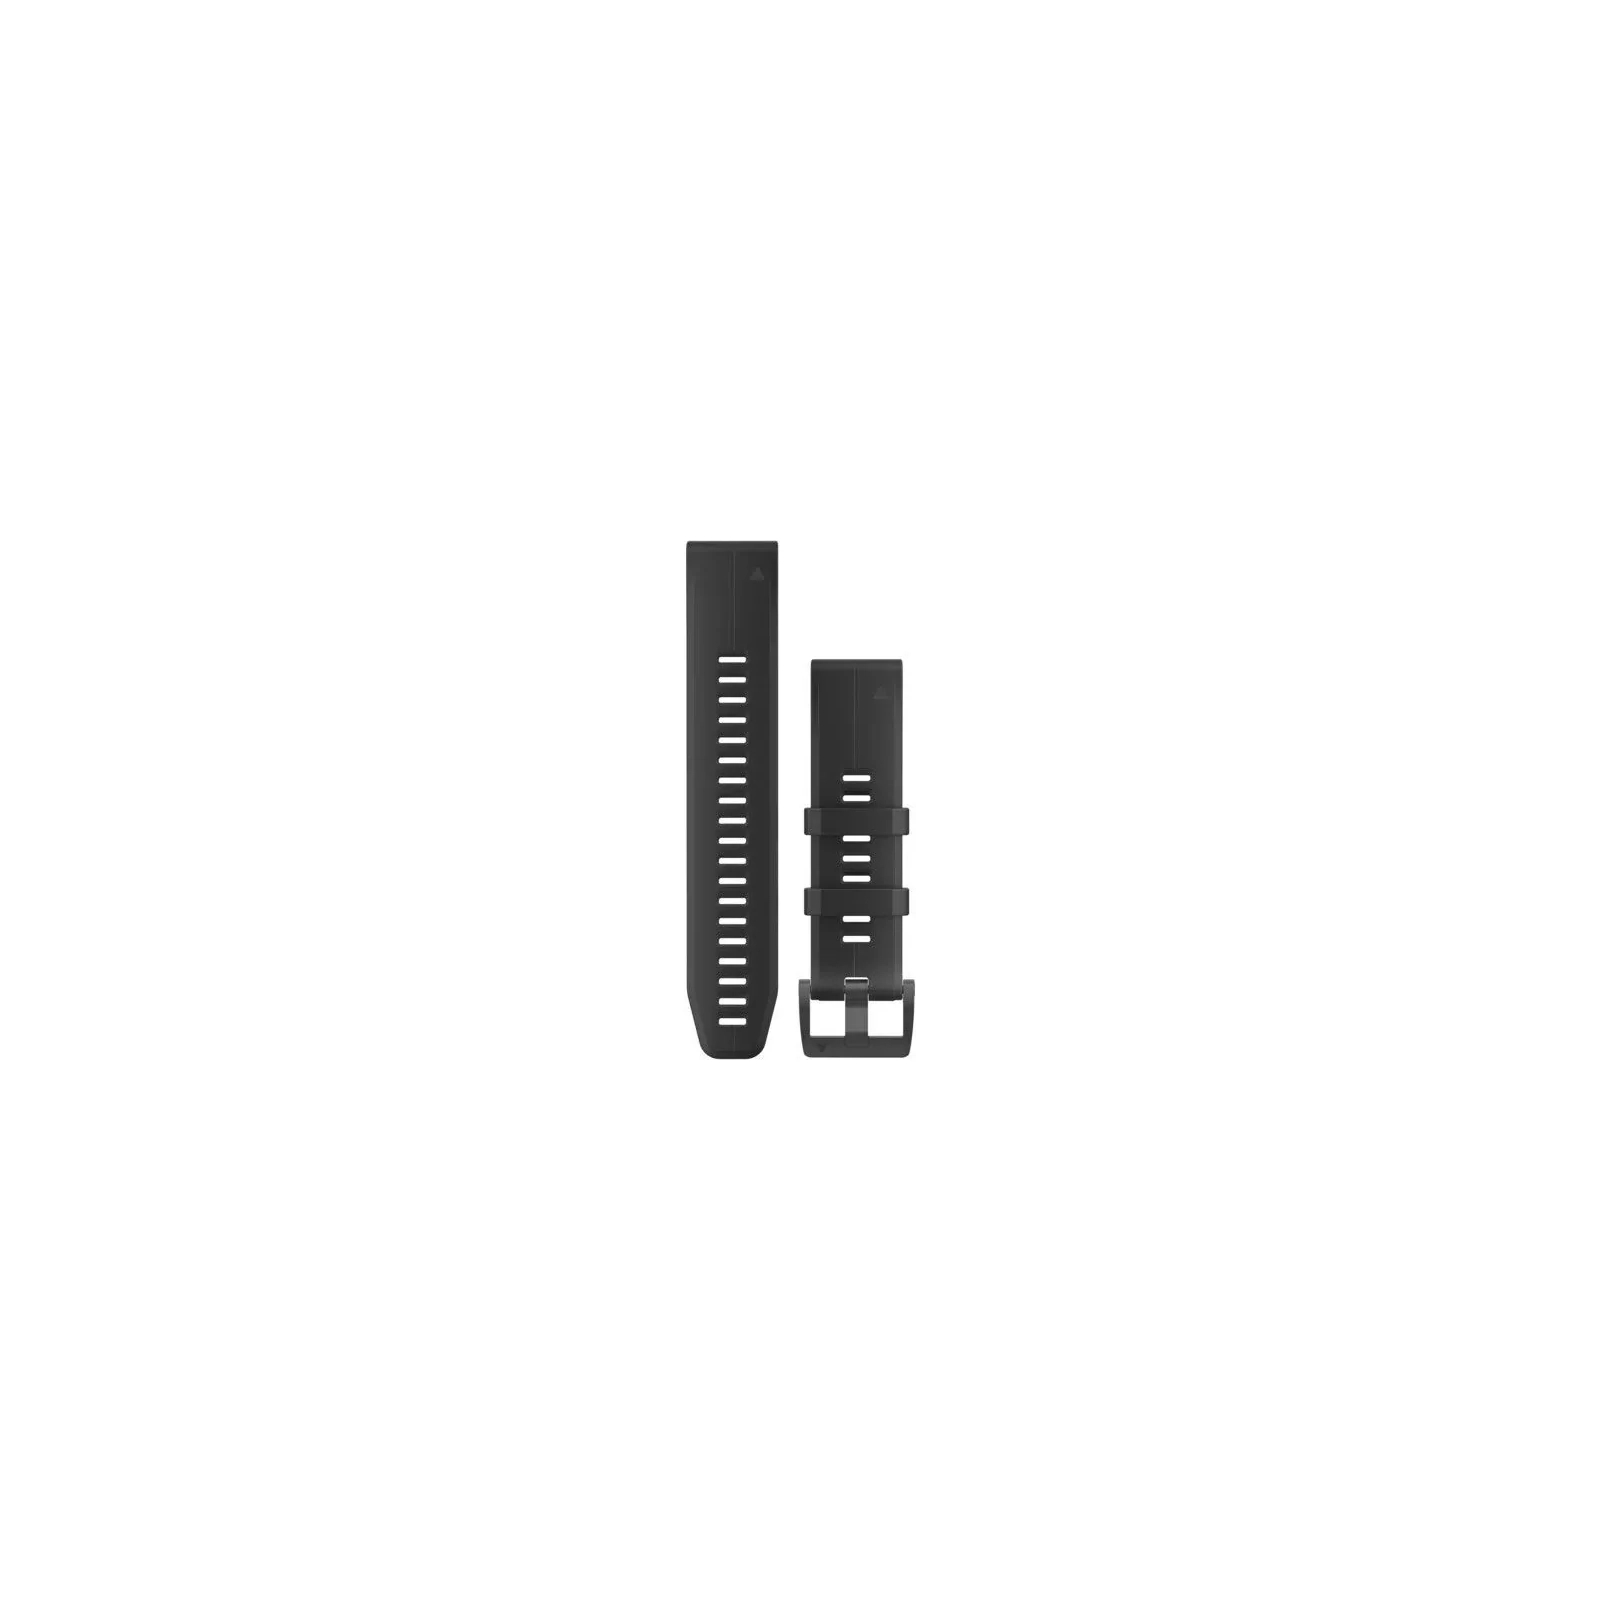 Ремешок для смарт-часов Garmin fenix 5 Plus 22mm QuickFit Black Leather (010-12740-01)